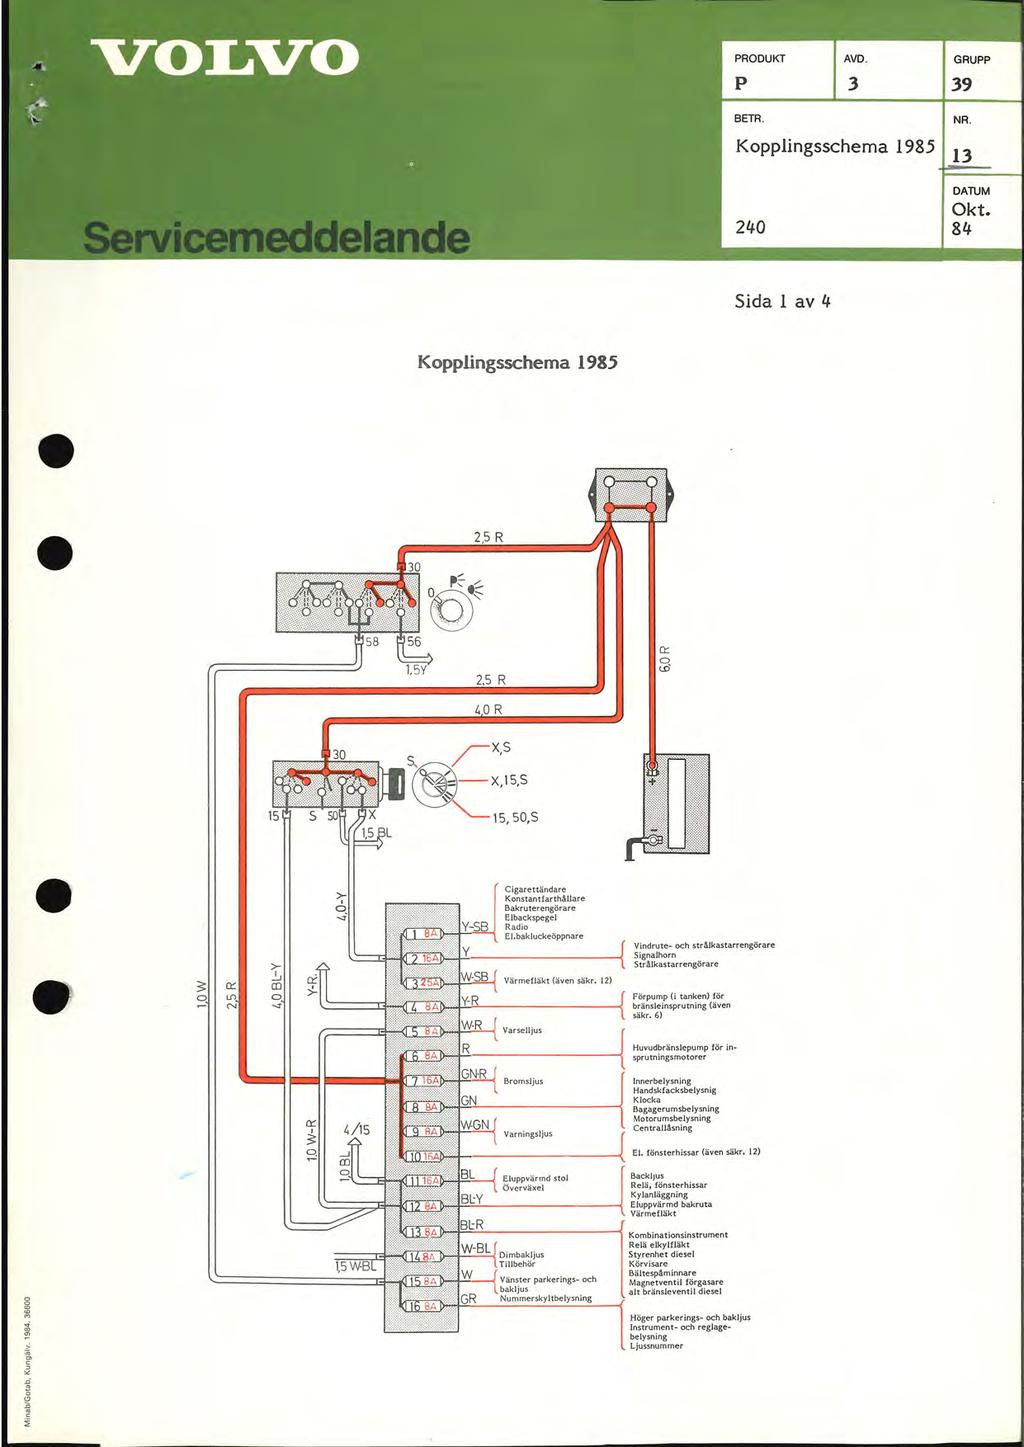 Kopplingsschema 98 9 NR. DATUM Okt. 8 Sida l av Kopplingsschema 98 Vindrute- och strålkastarrengörare Signalhorn Strålkastarrengörare Förpump (i tanken) för bränsleinsprutning (även säkr.